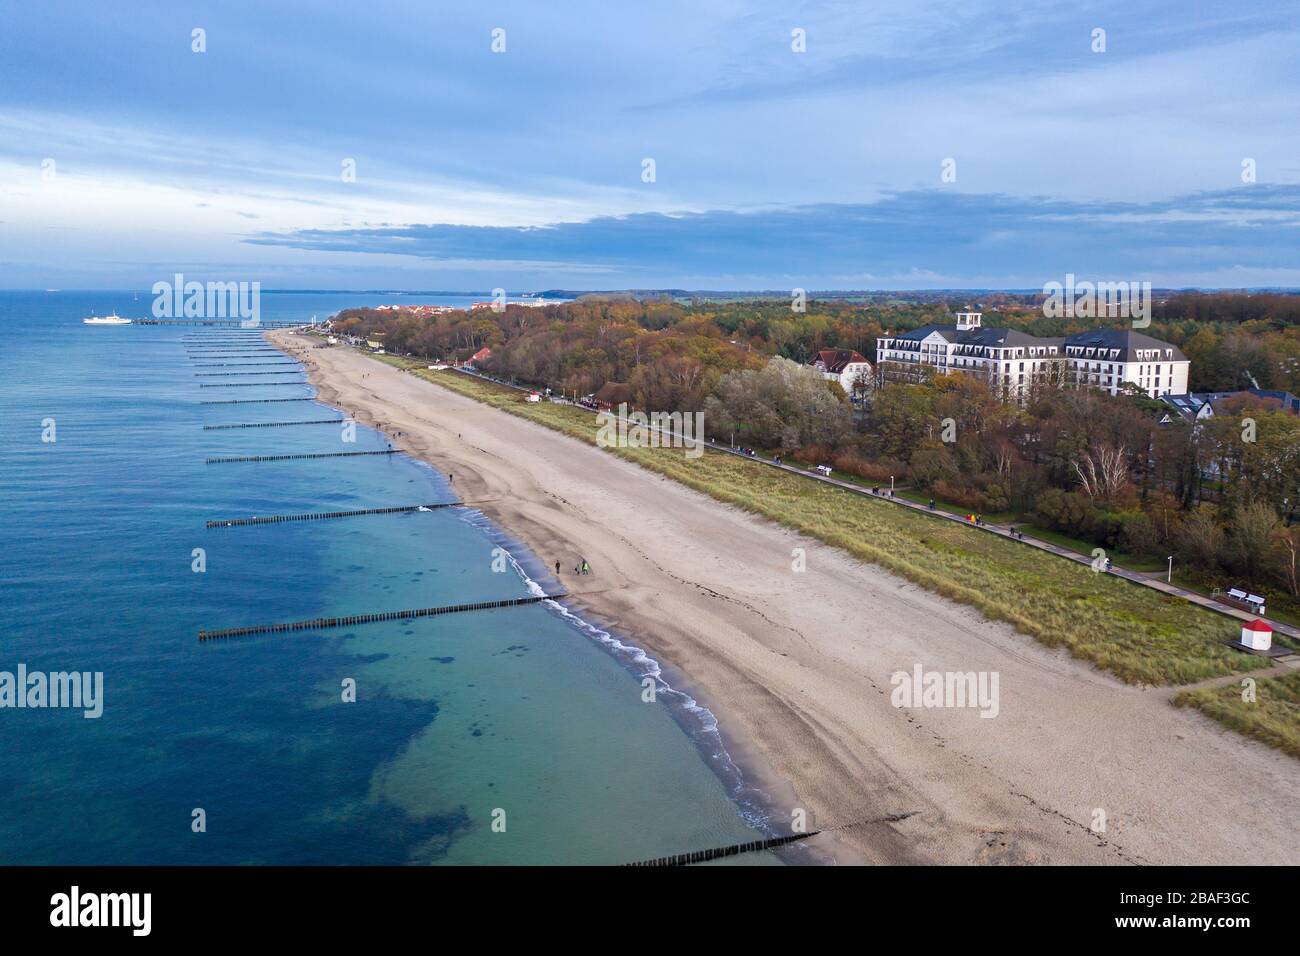 aerial view of seaside resort Kühlungsborn coastline Stock Photo